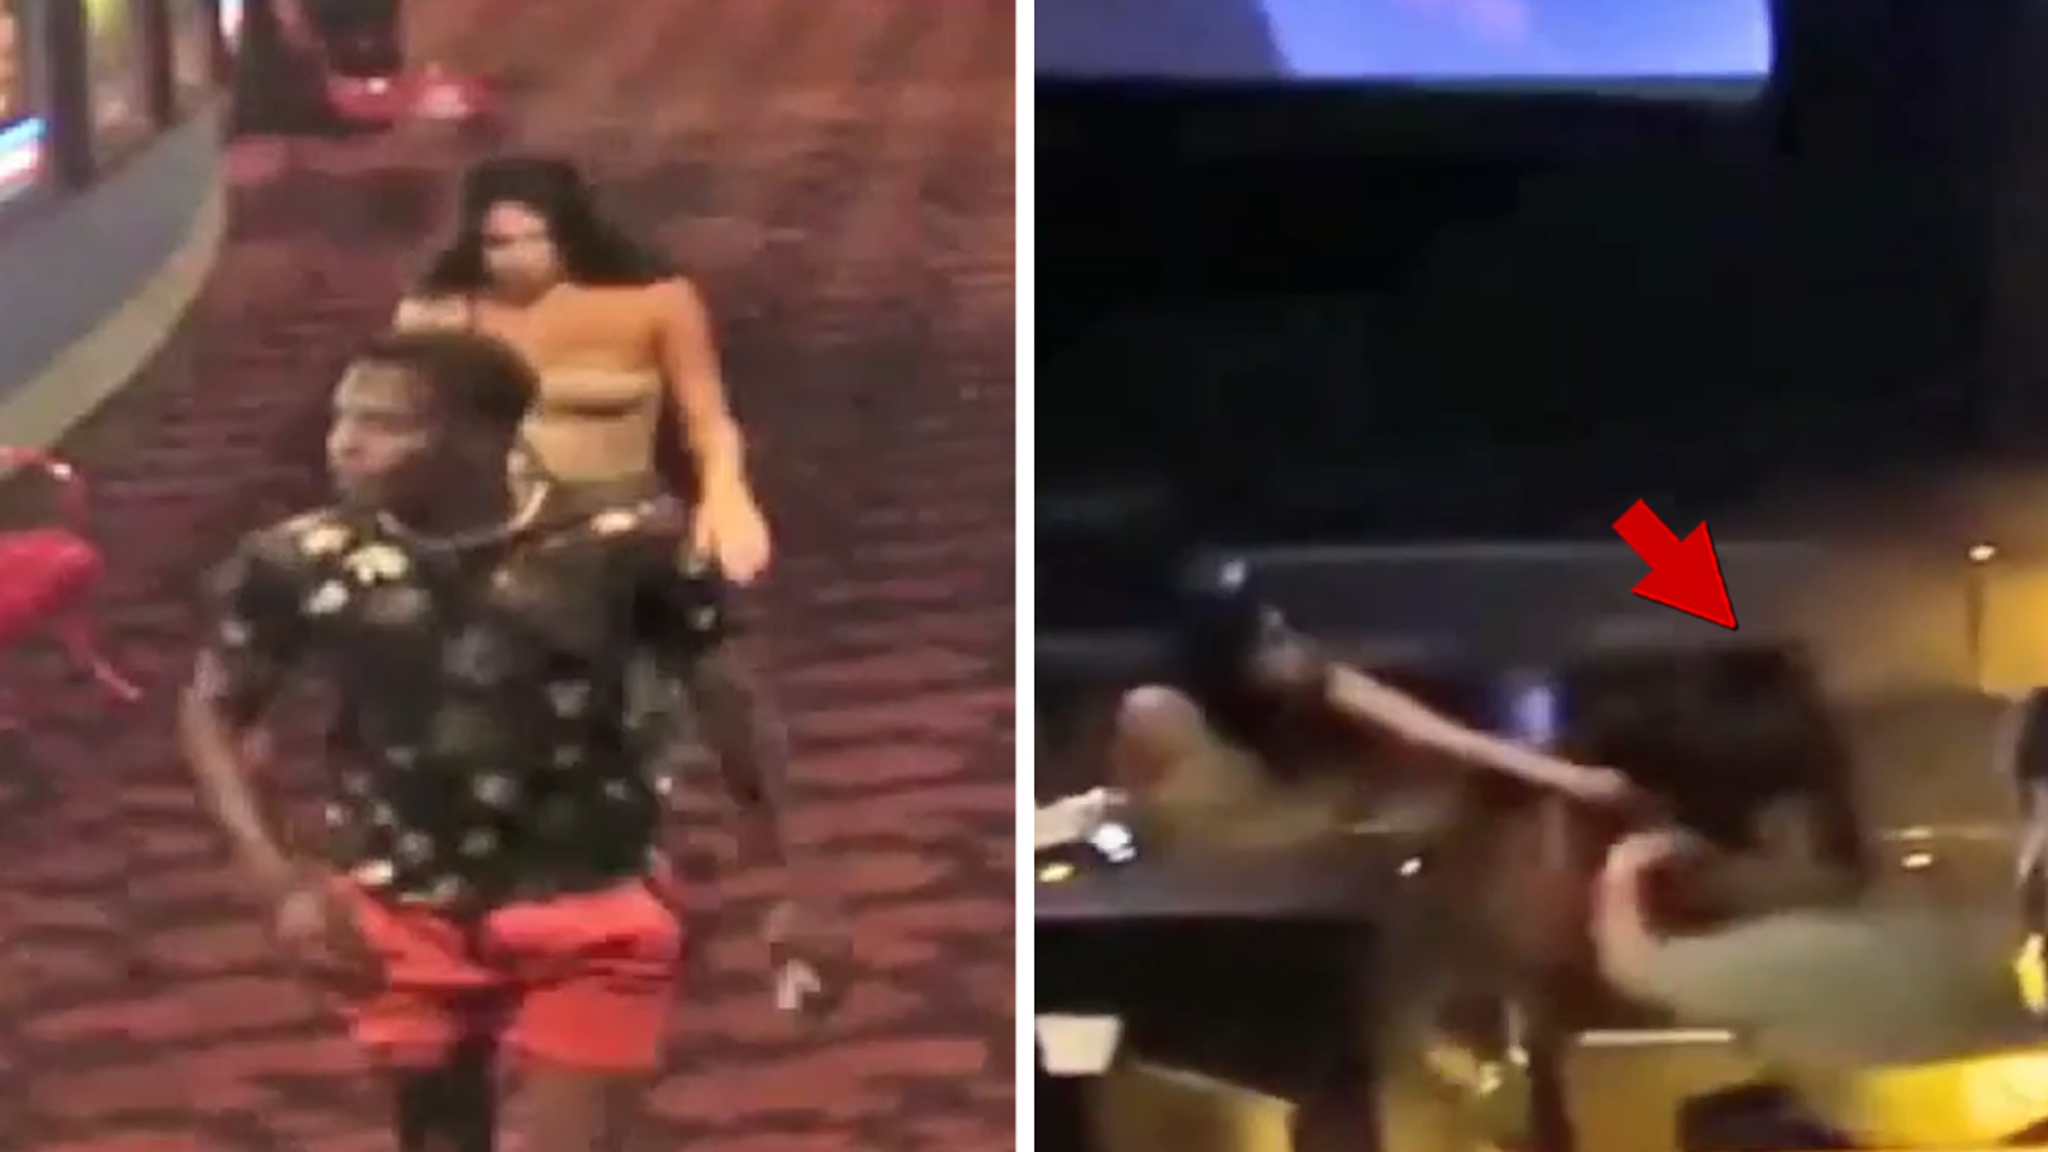 O vídeo mostra uma surra brutal em um cinema AMC por causa dos assentos e policiais procurando por um suspeito